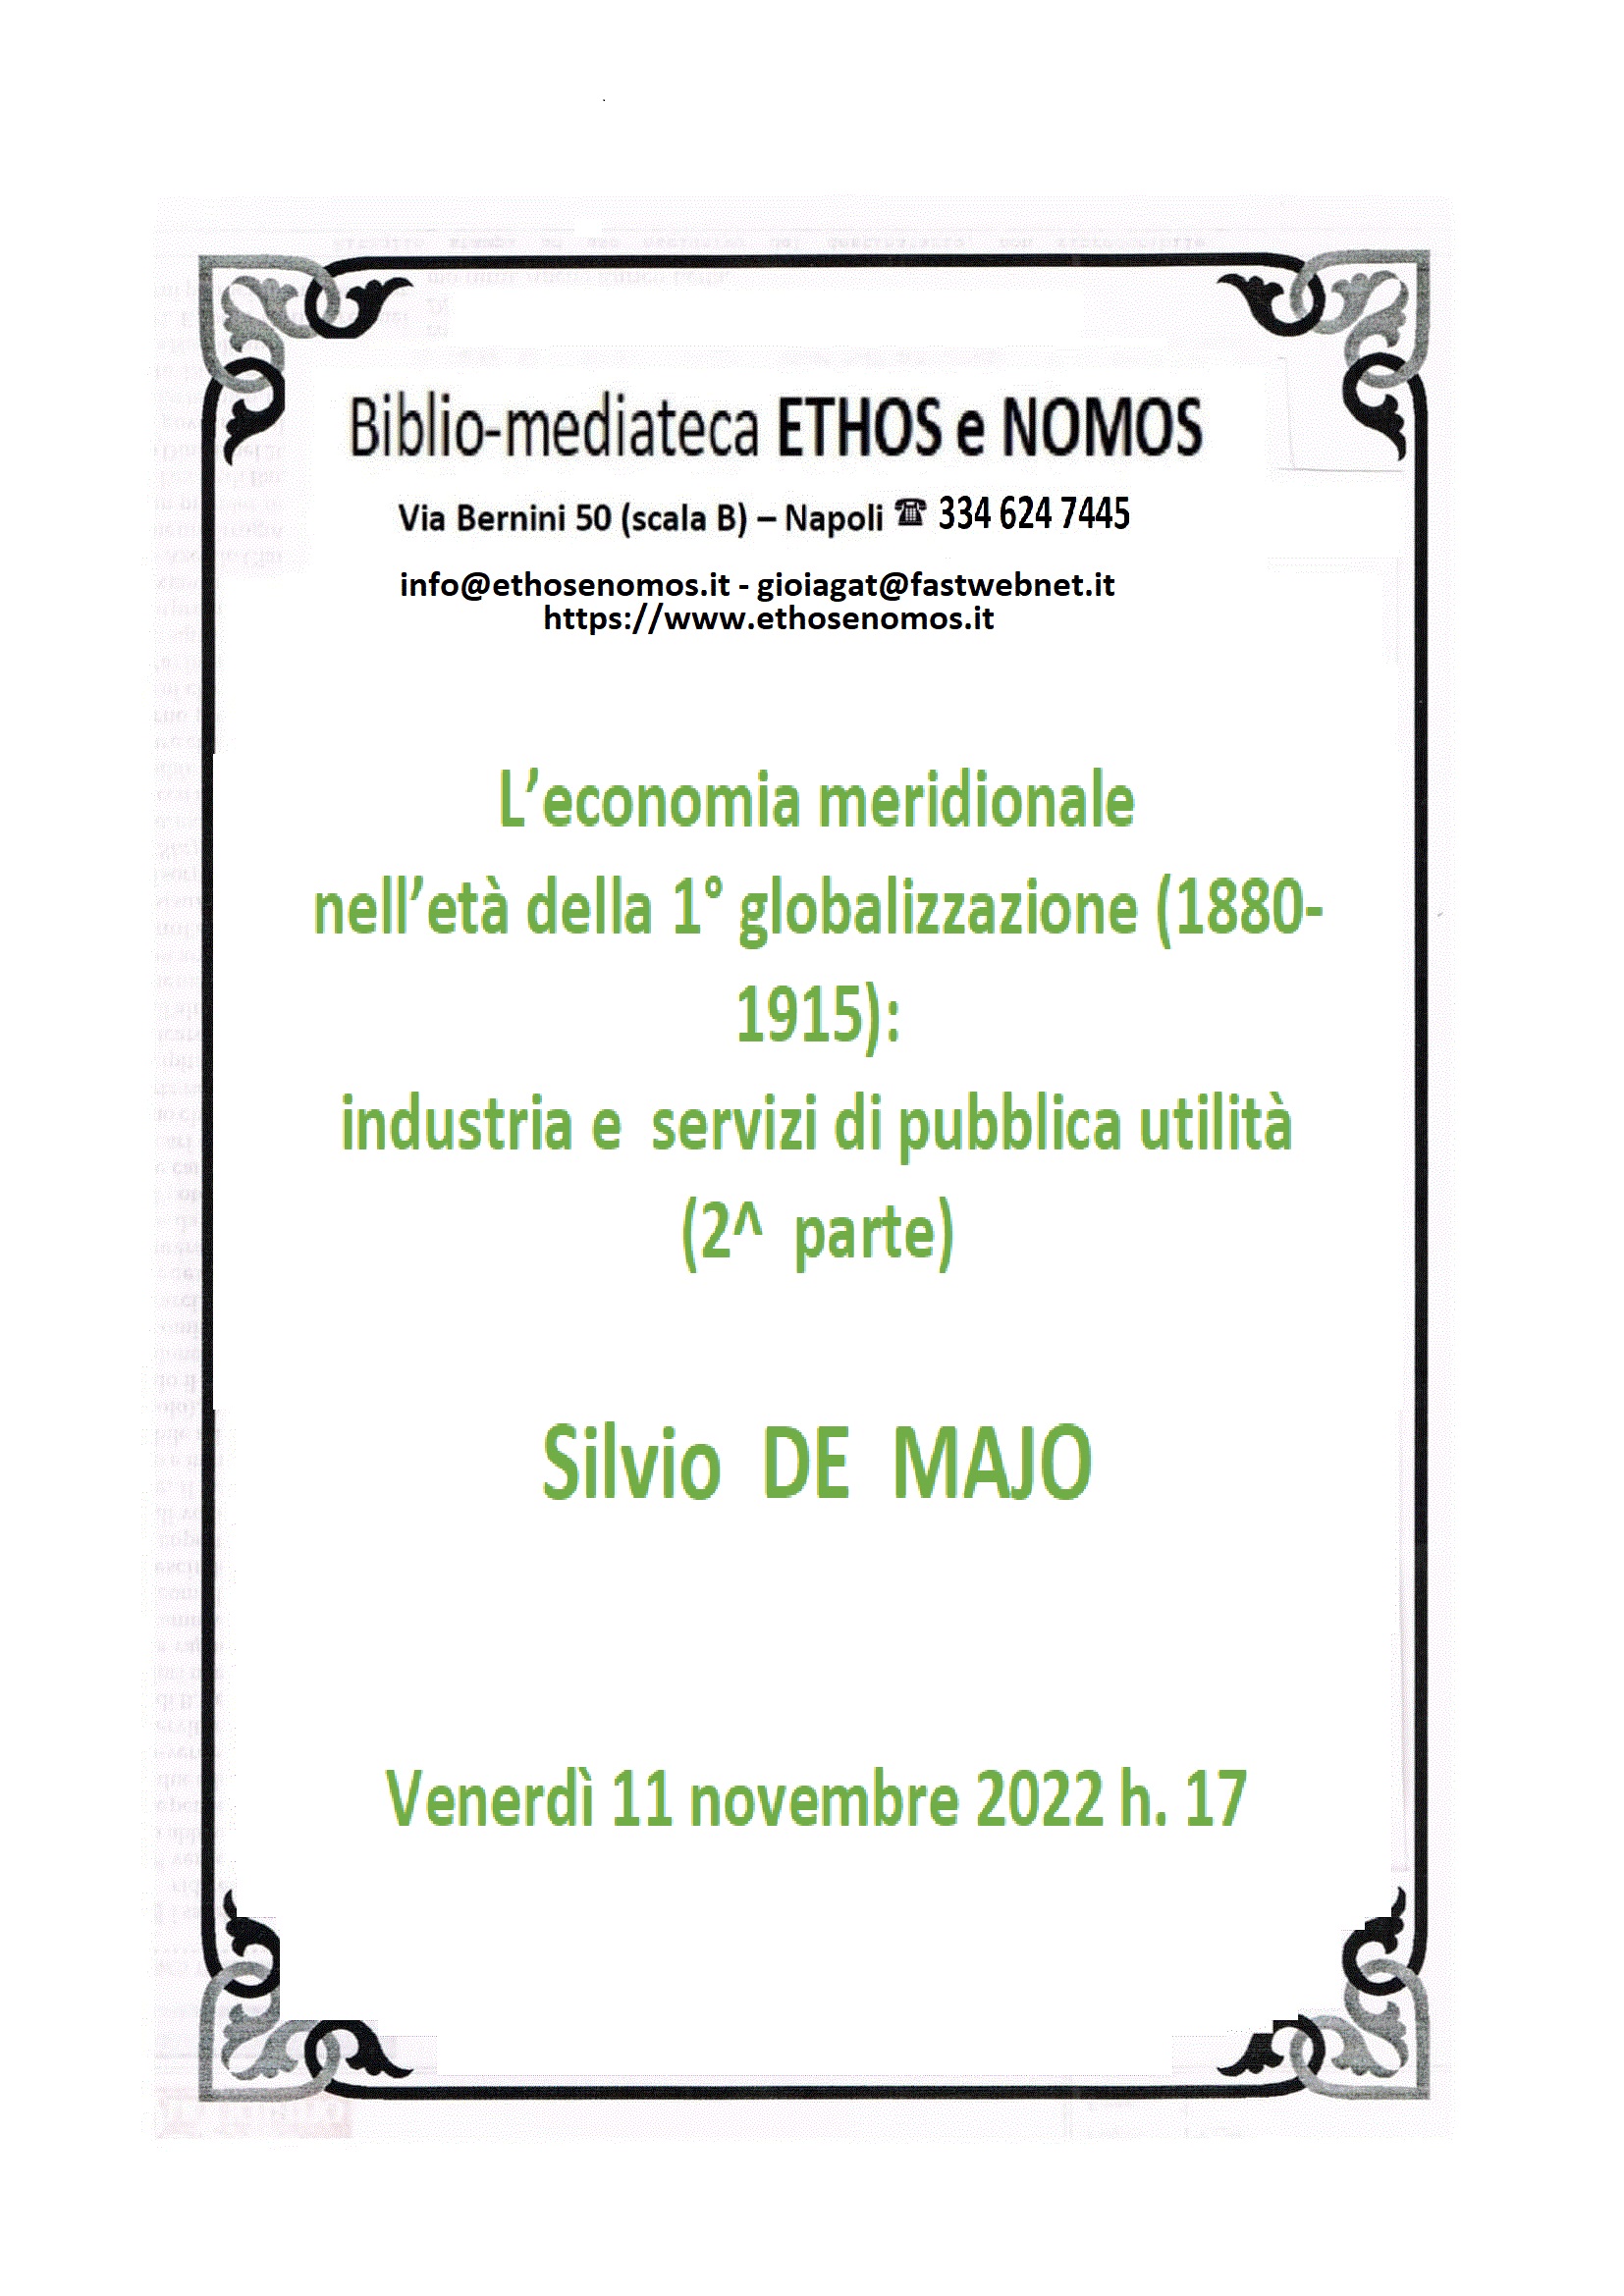 Silvio DE MAJO - L’economia meridionale nell’età della 1.globalizzazione (1880-1915): industria e servizi di pubblica utilità (2. parte)